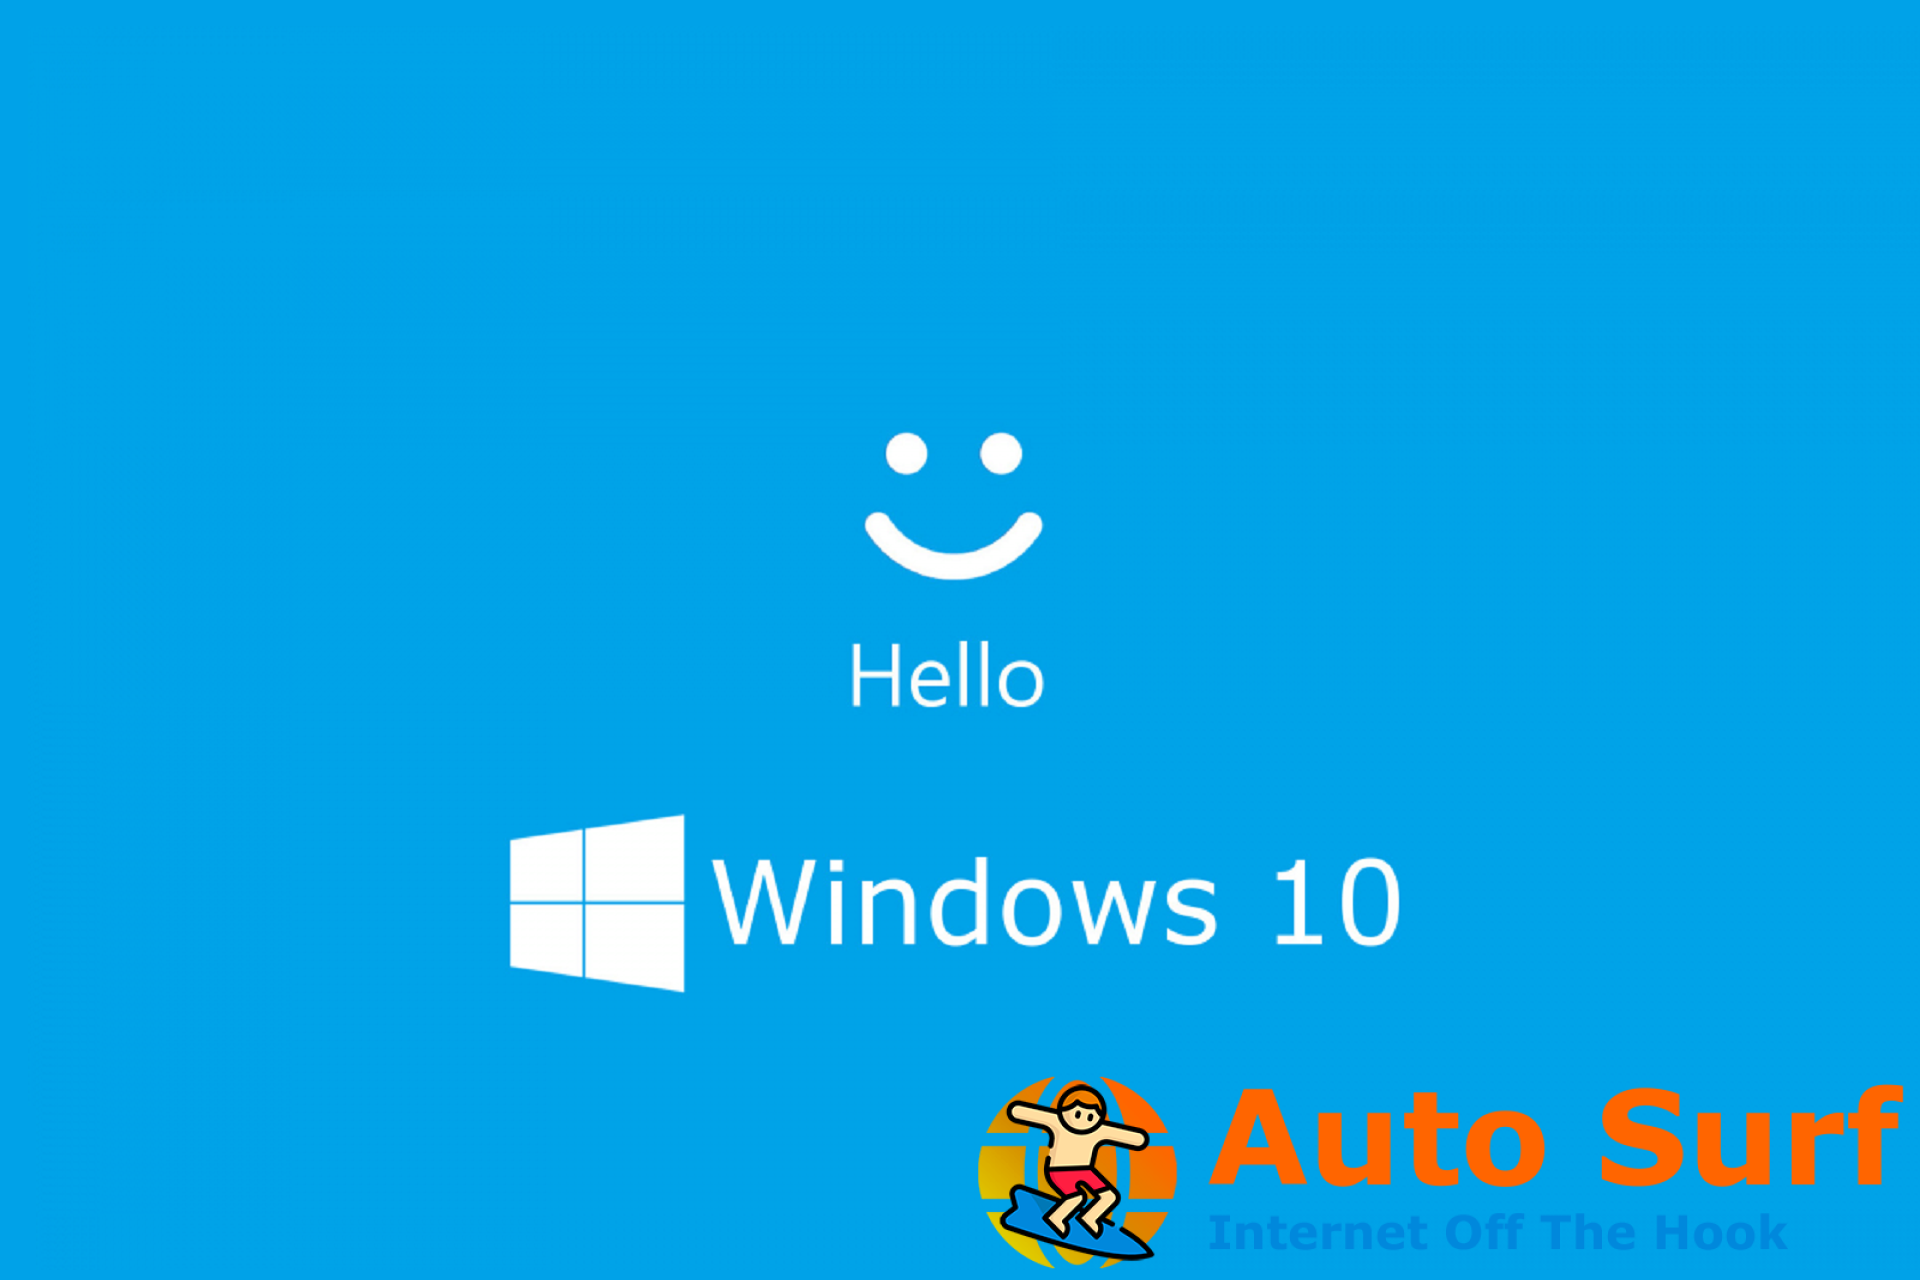 windows hello dejo de funcionar despues de actualizar